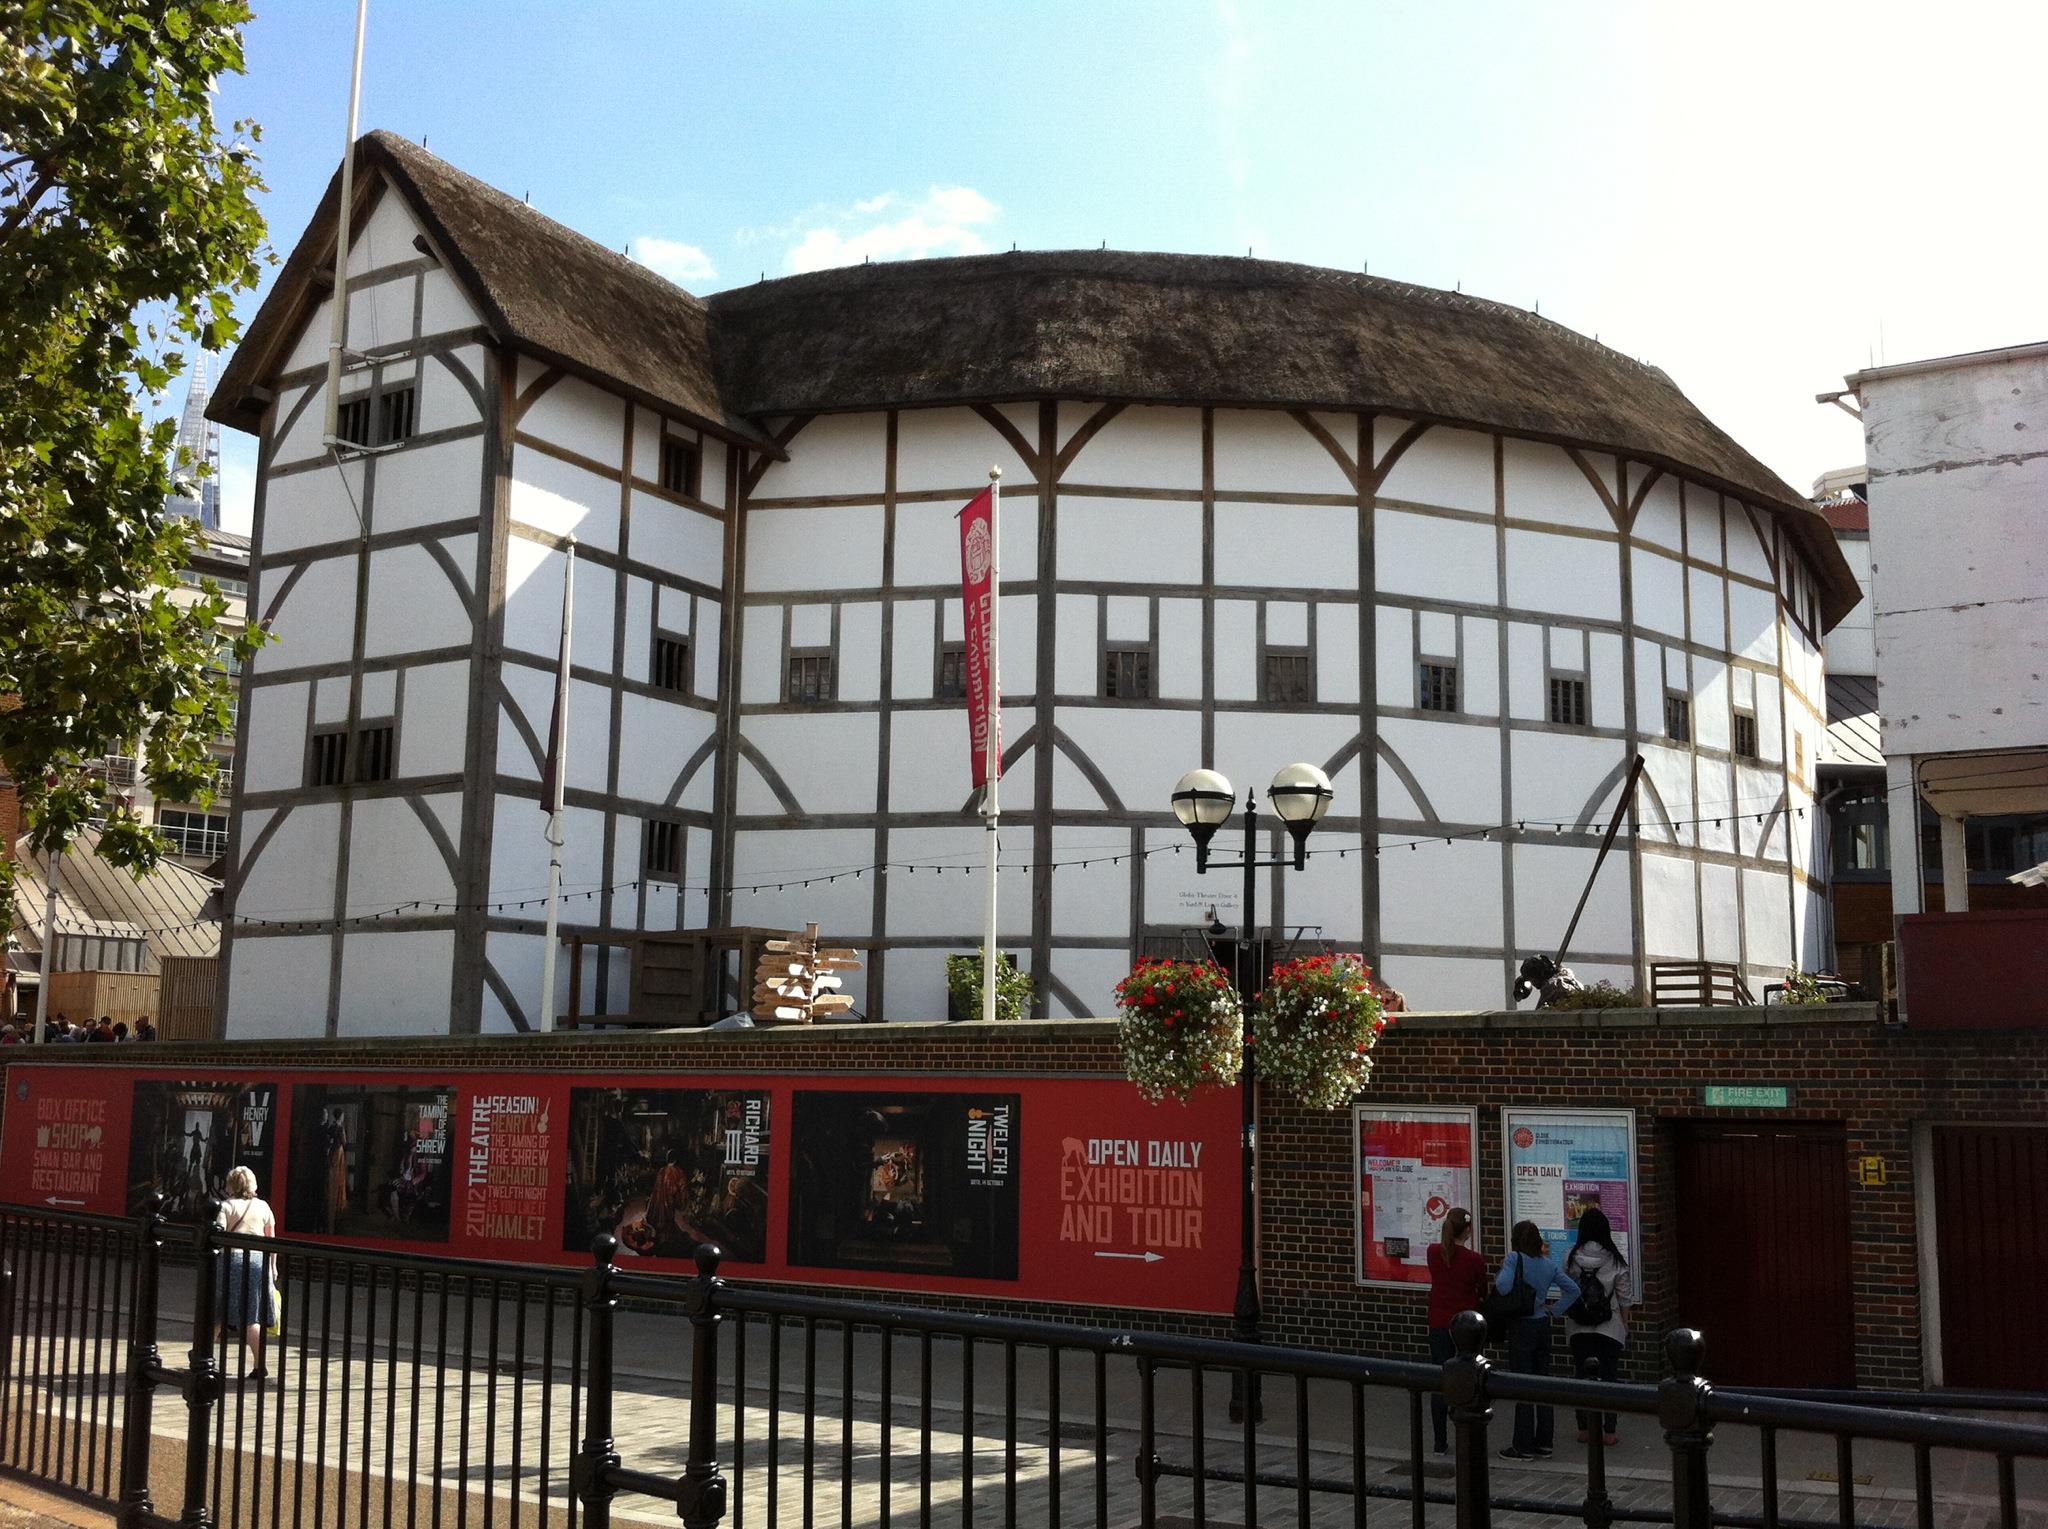 Shakespeare s theatre. Вильям Шекспир театр Глобус. Театр Глобус в Лондоне. Театр Глобус Шекспира 1599. Театр Шекспира в Лондоне.